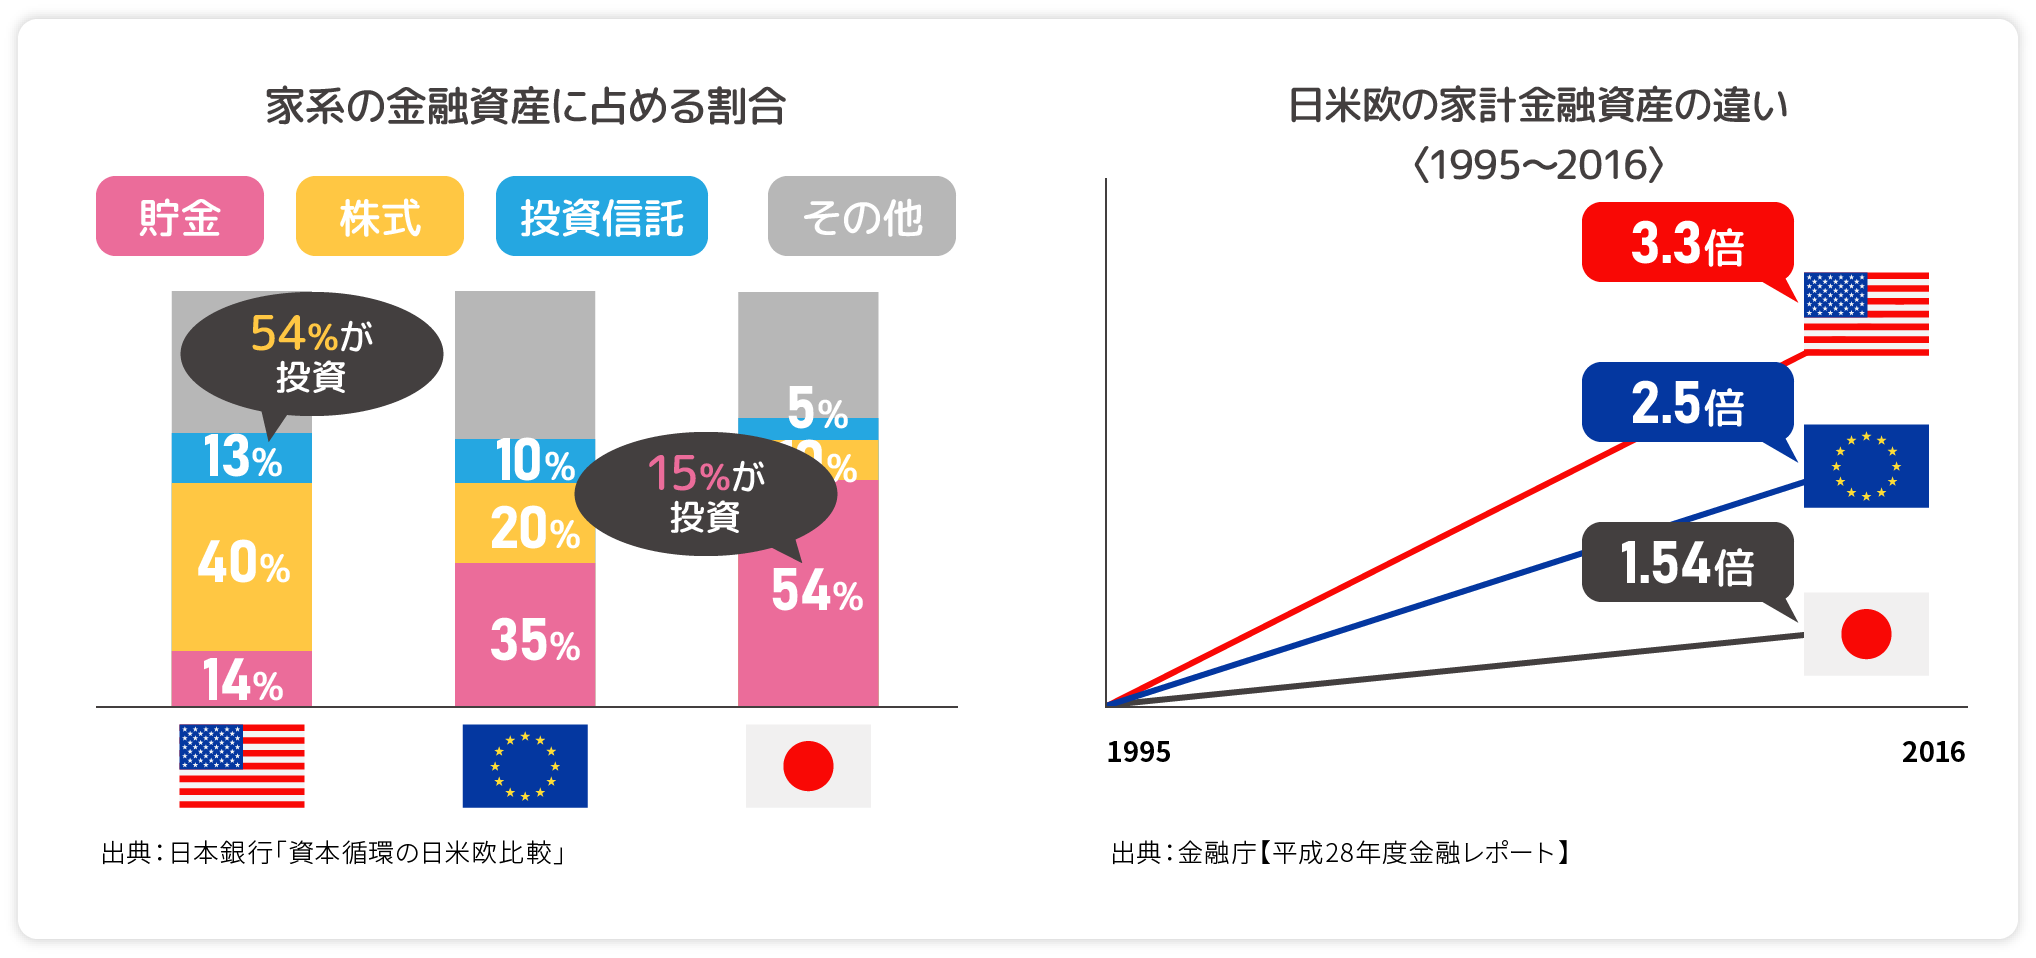 家系の金融資産に占める割合と日米欧の家計金融資産の違い〈1995〜2016〉